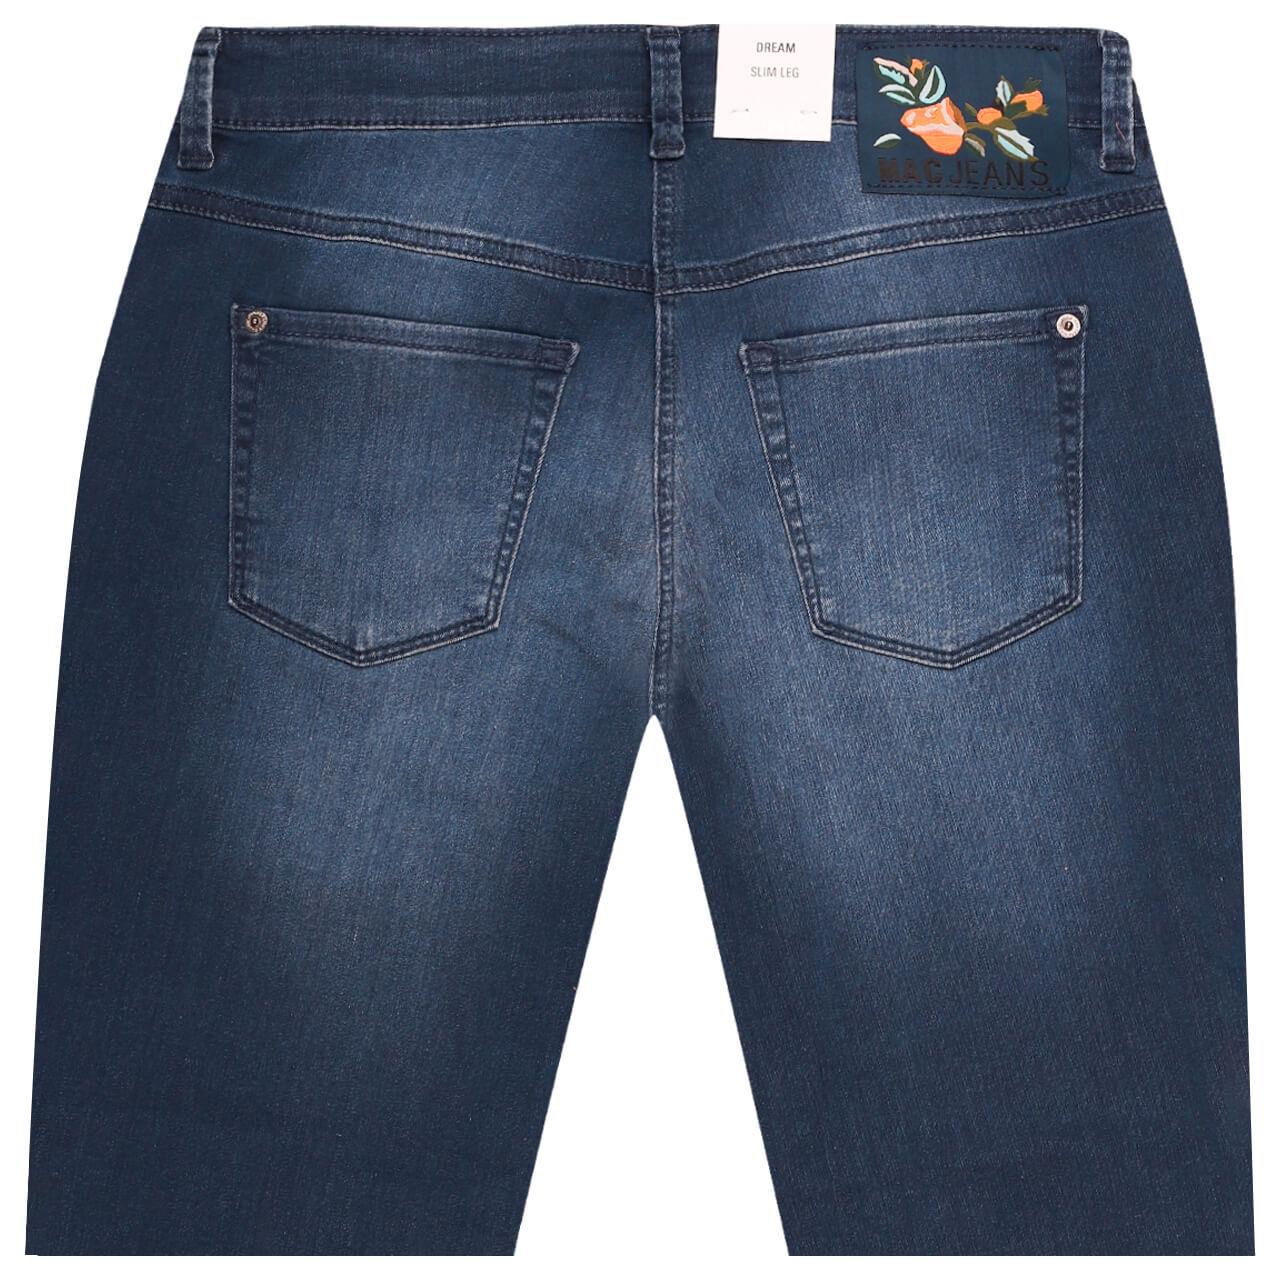 MAC Dream Summer 7/8 Jeans basic used mid blue wonderlight